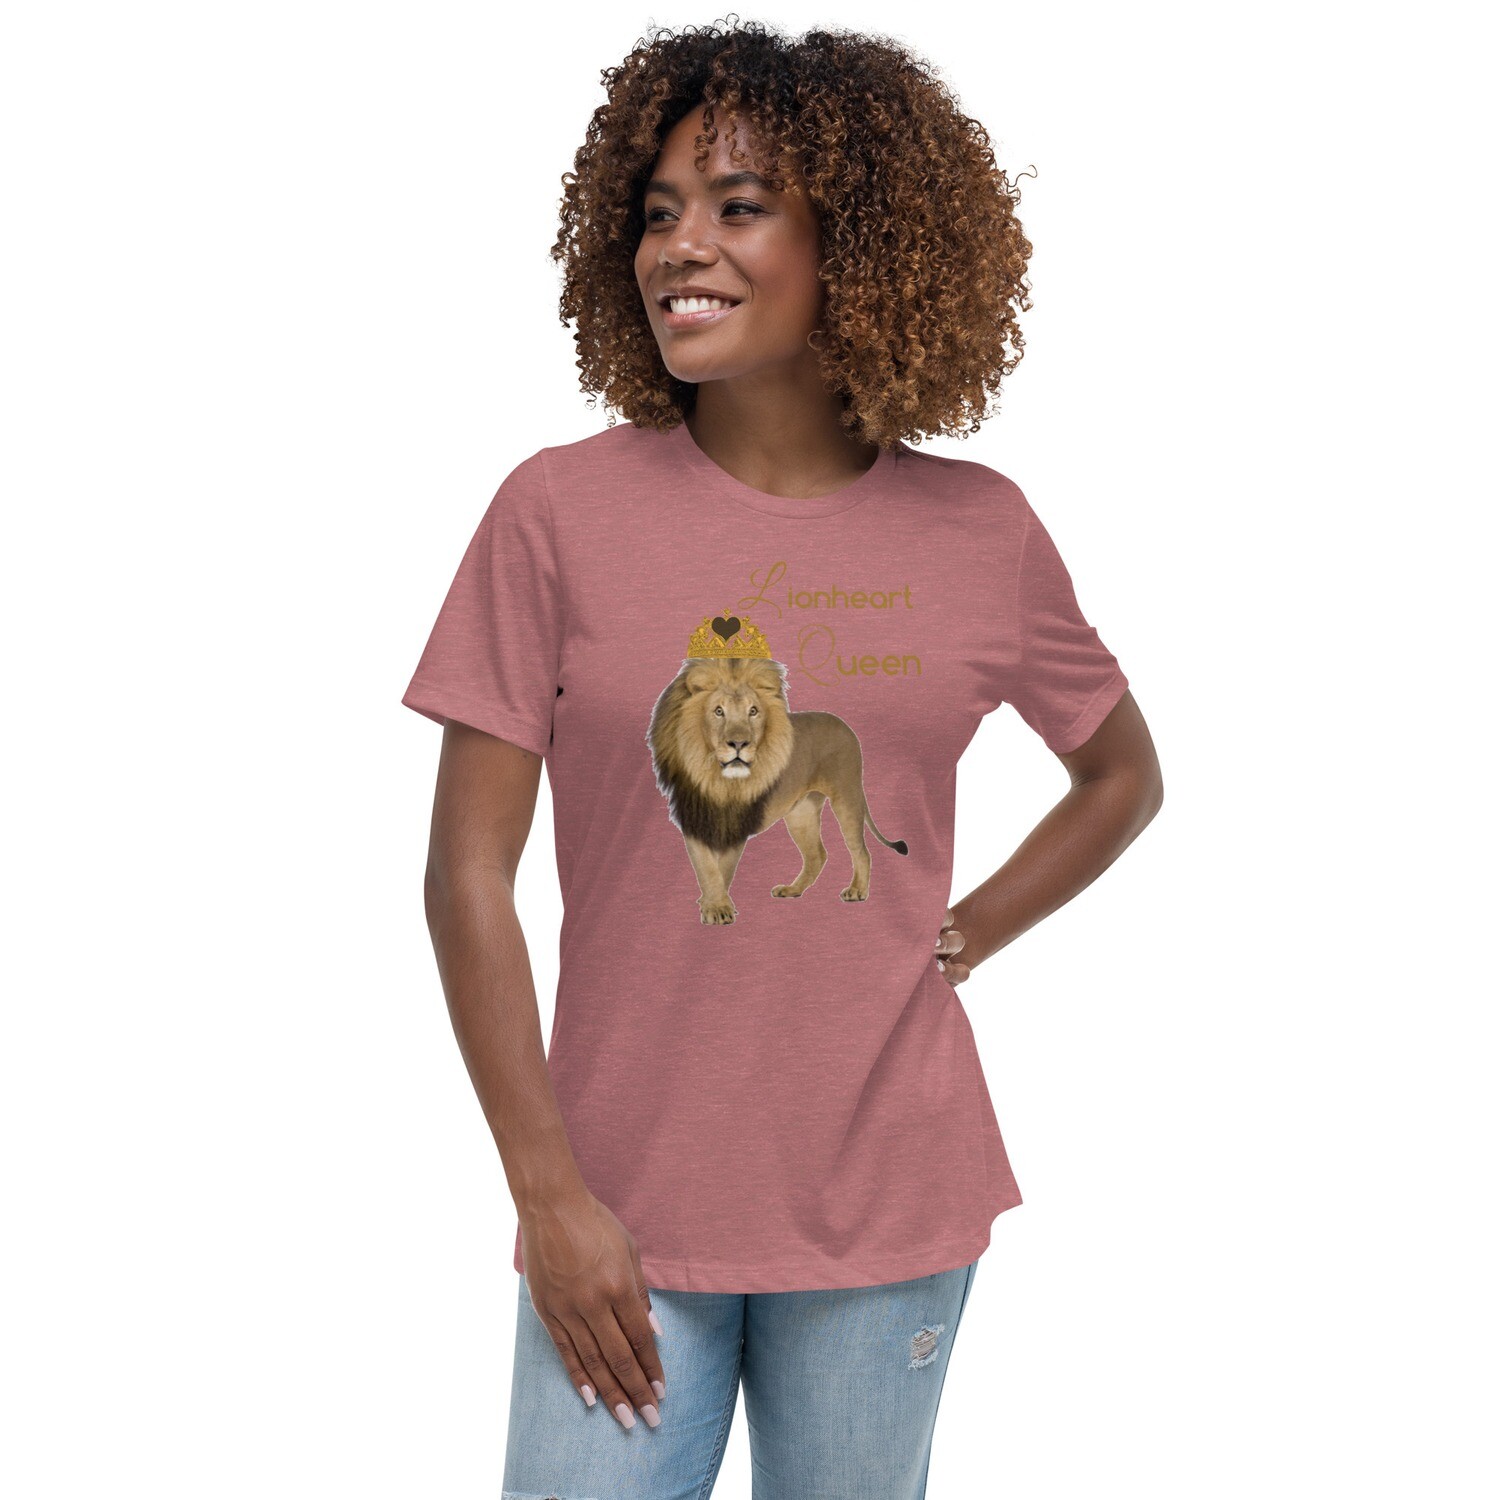 Lionheart Queen Women's Relaxed T-Shirt